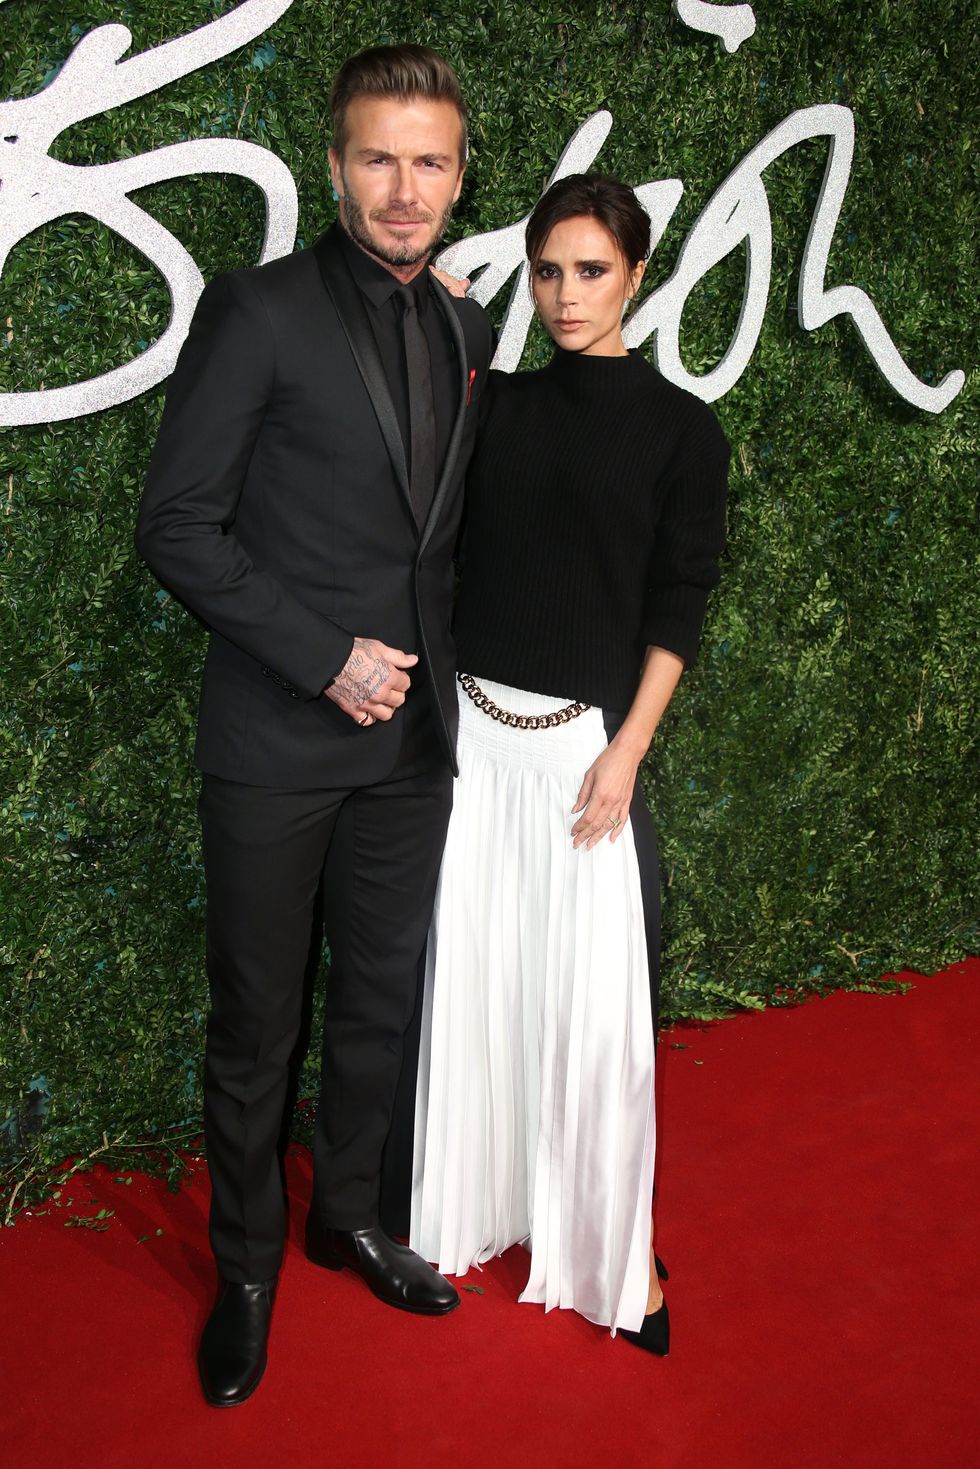 David and Victoria Beckham at the 2014 British Fashion Awards